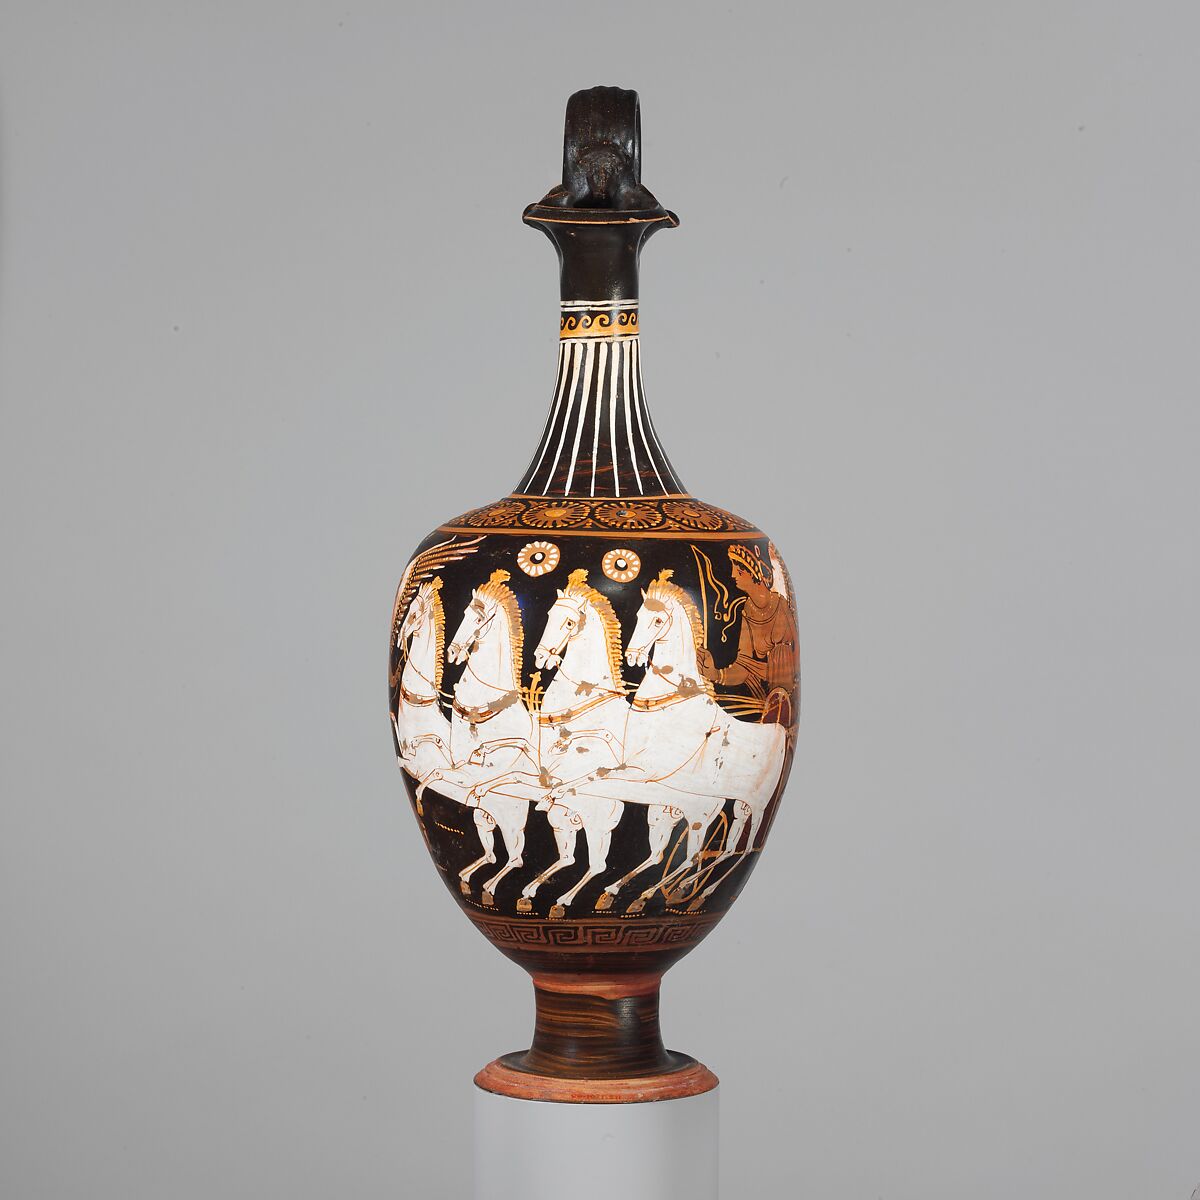 Terracotta oinochoe (jug), Attributed to the Stuttgart Group, Terracotta, Greek, South Italian, Apulian 